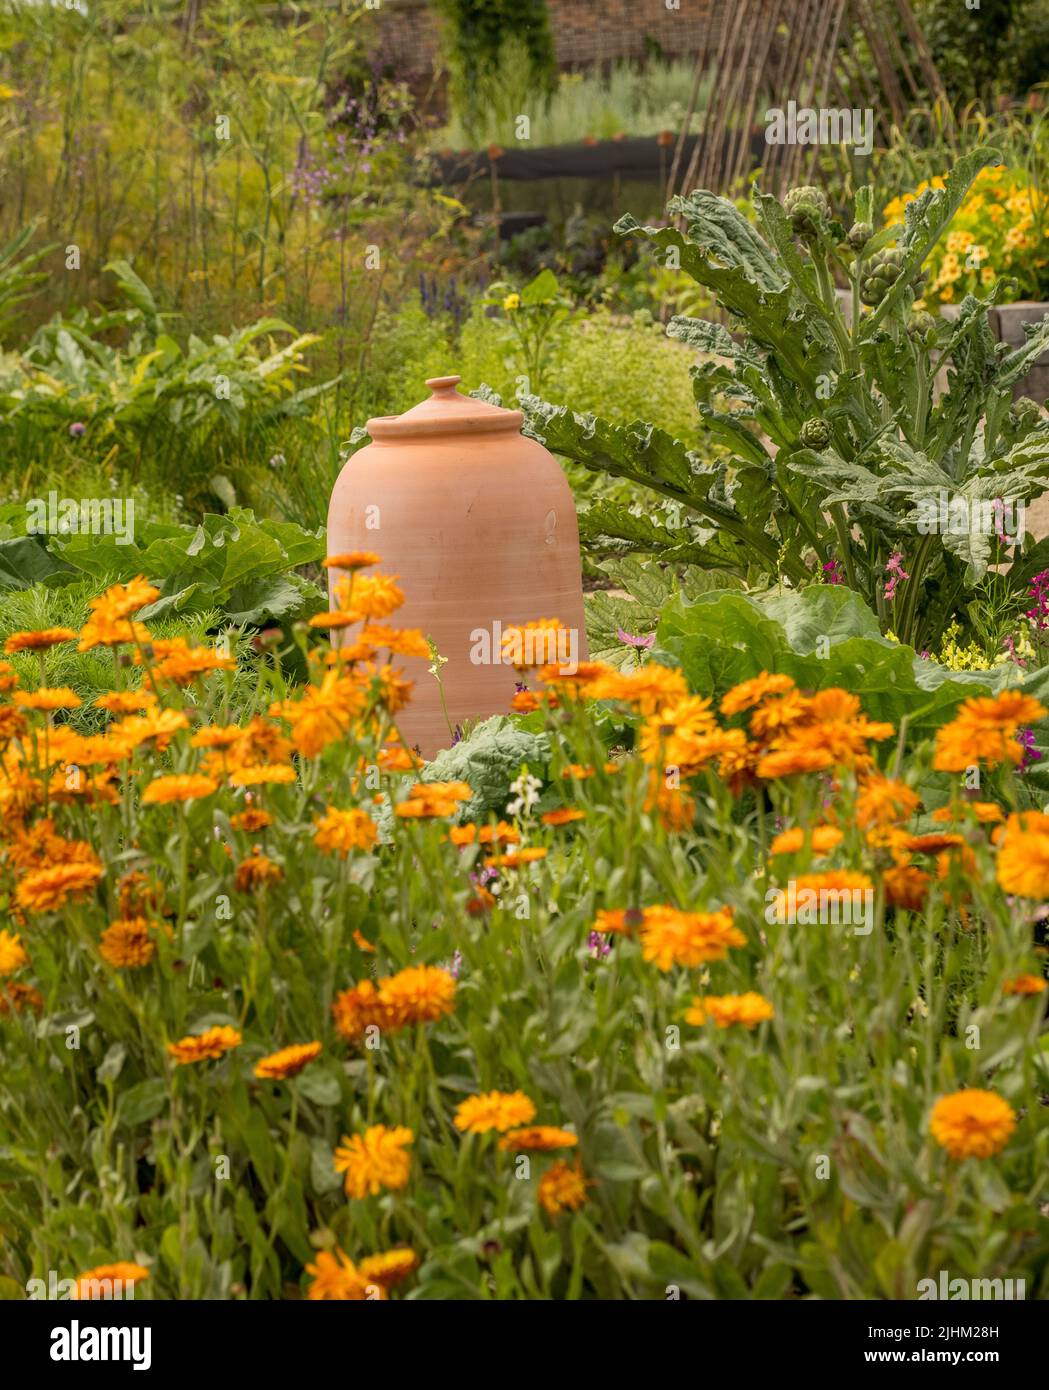 Forcer in terracotta in un giardino inglese con marigolds arancioni in primo piano. Foto Stock